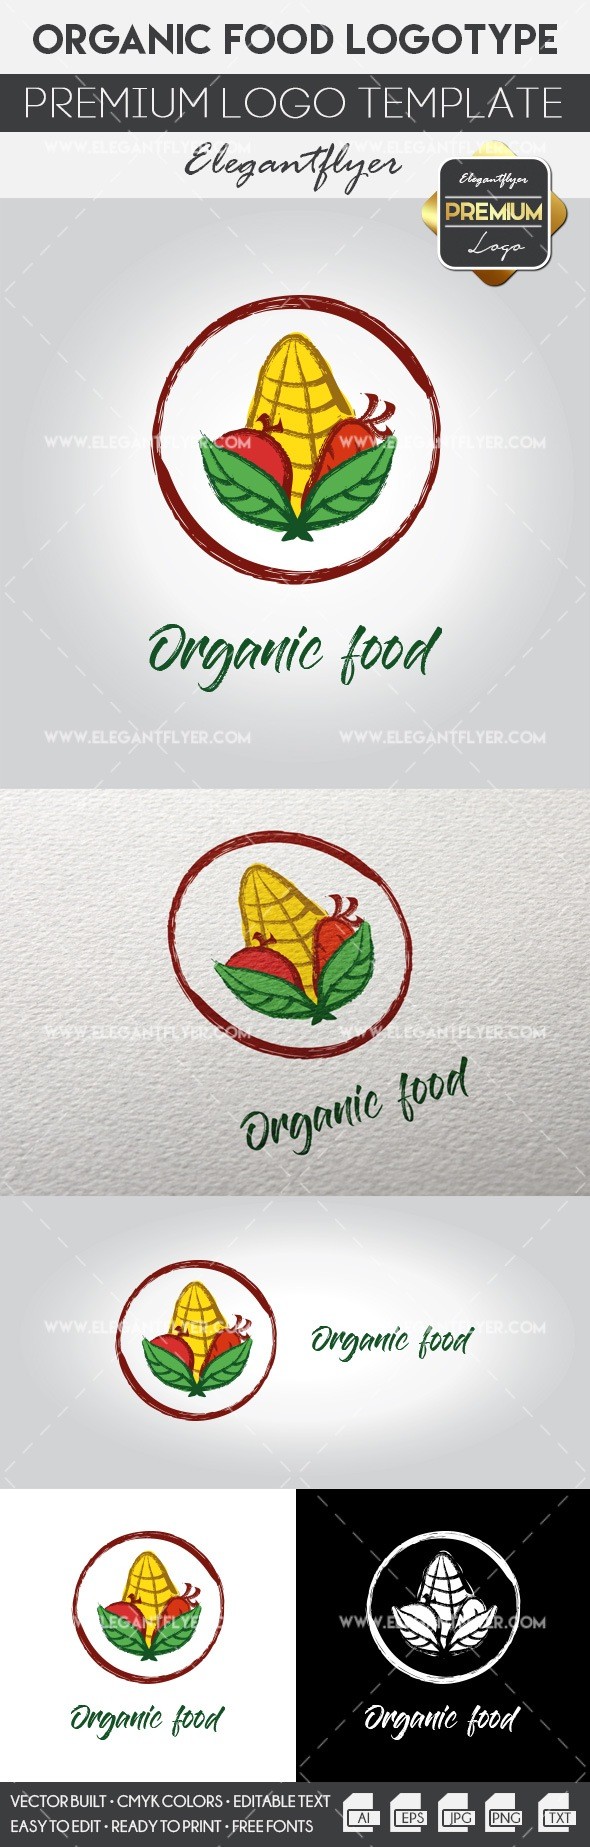 Biolandwirtschaftliche Lebensmittel by ElegantFlyer